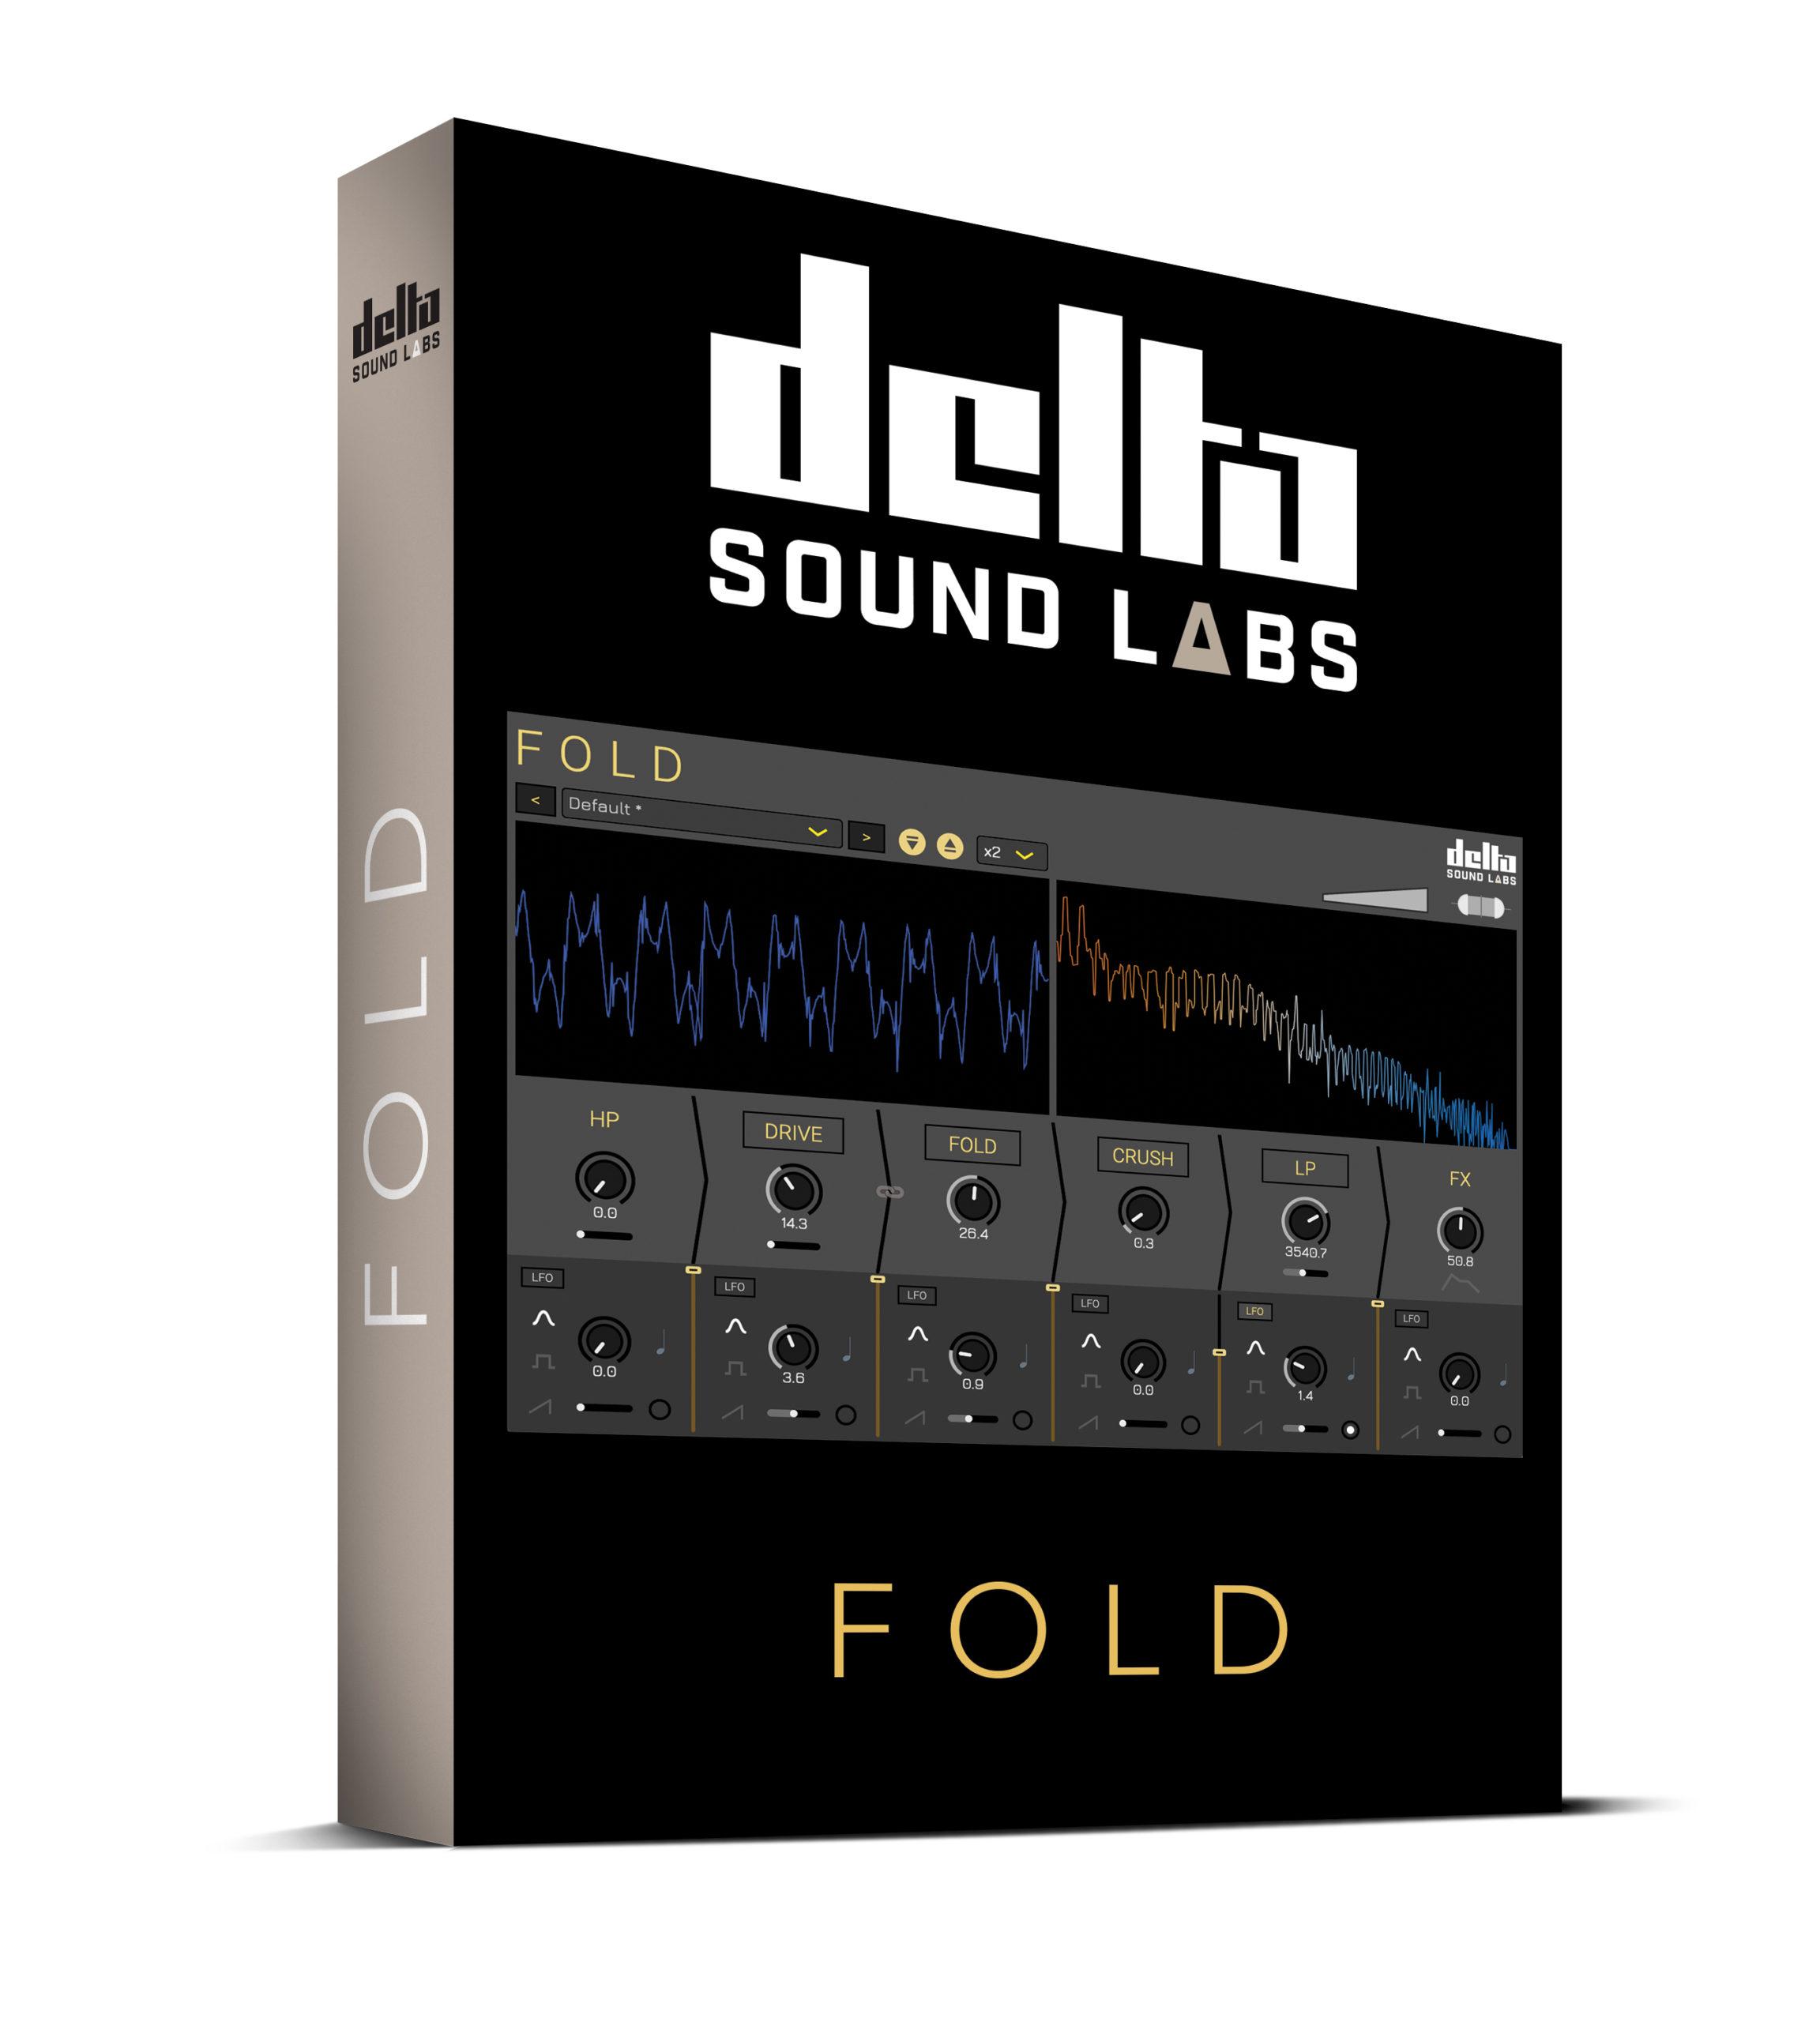 温暖失真 – Delta Sound Labs Fold 1.1.0 WiN